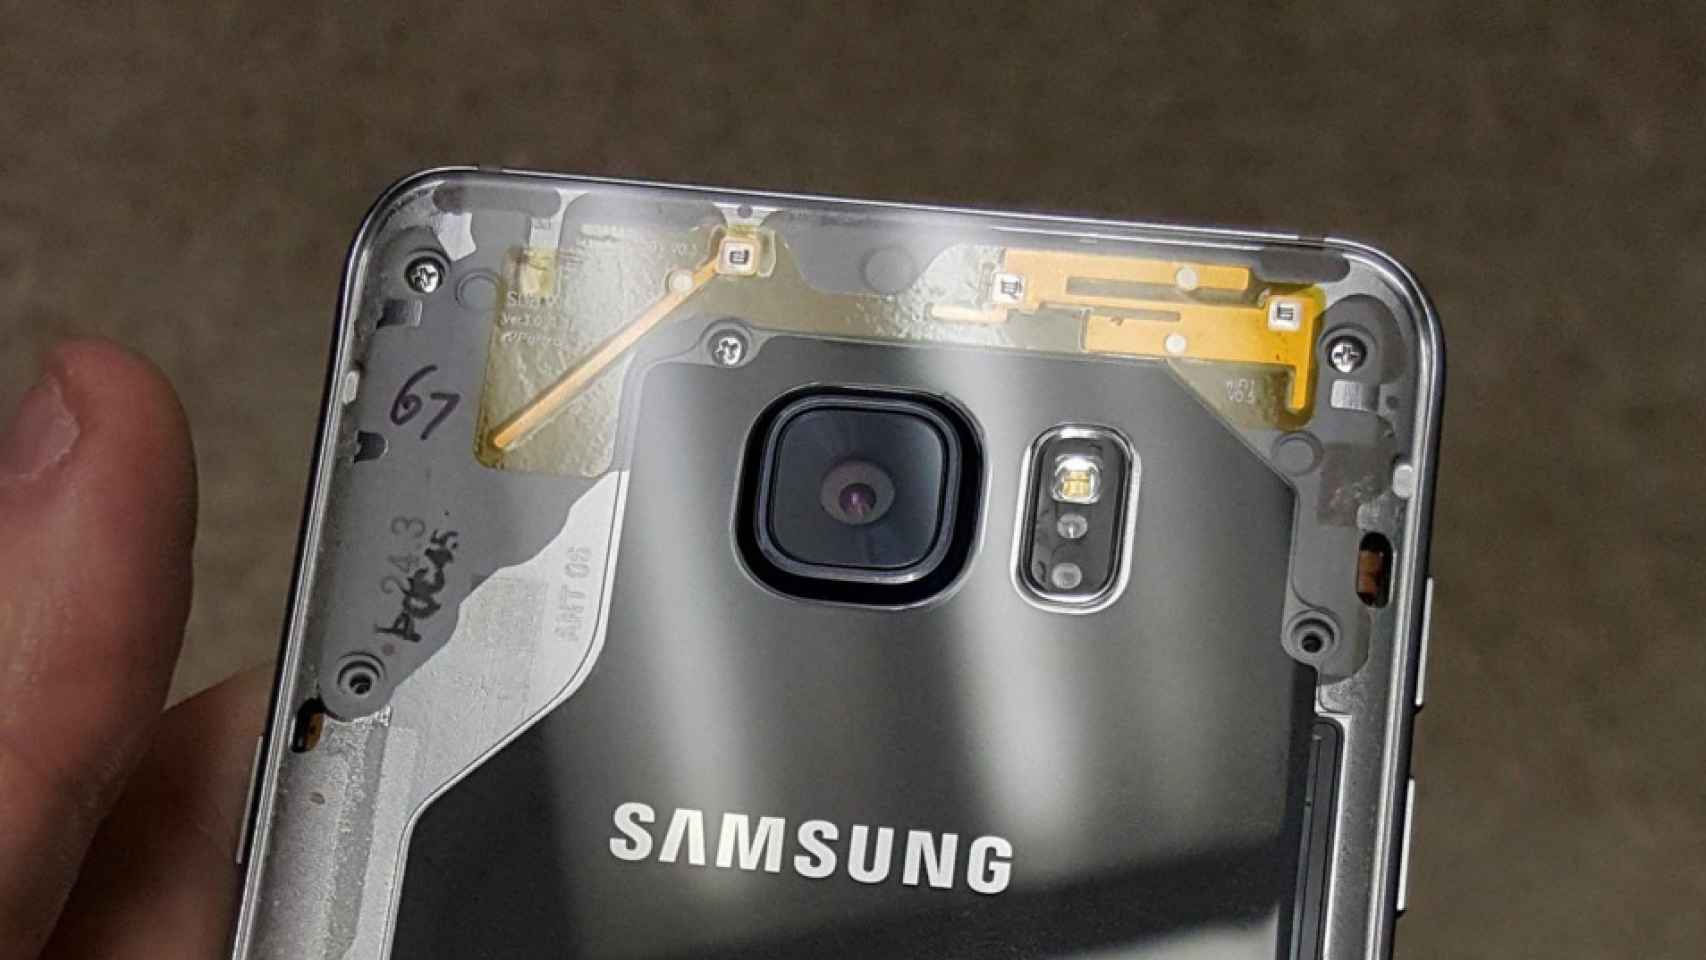 Samsung: queremos este Note 5 transparente